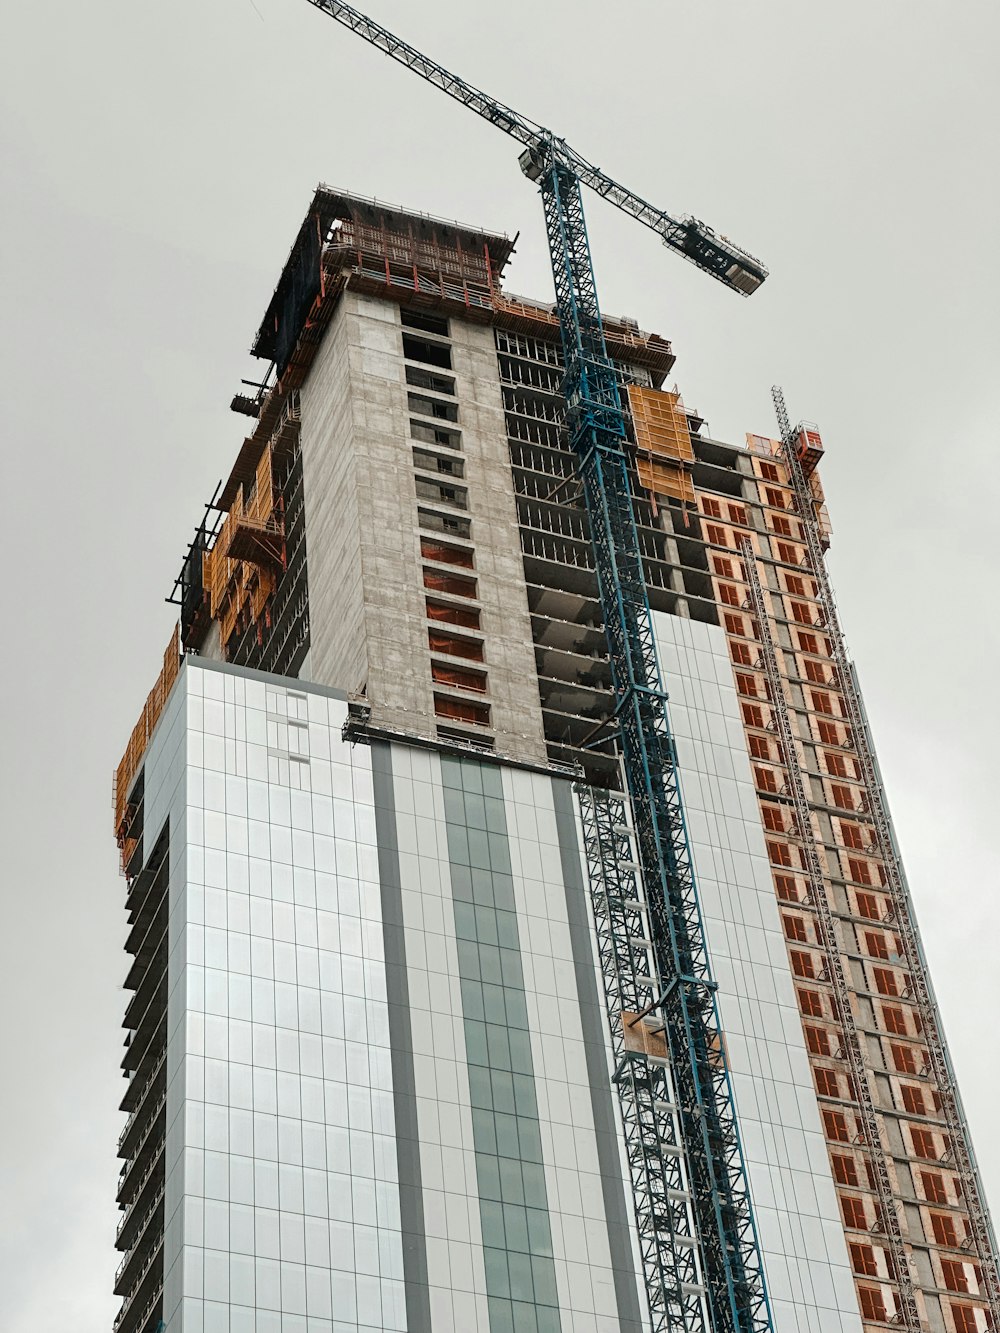 a crane lifting a building